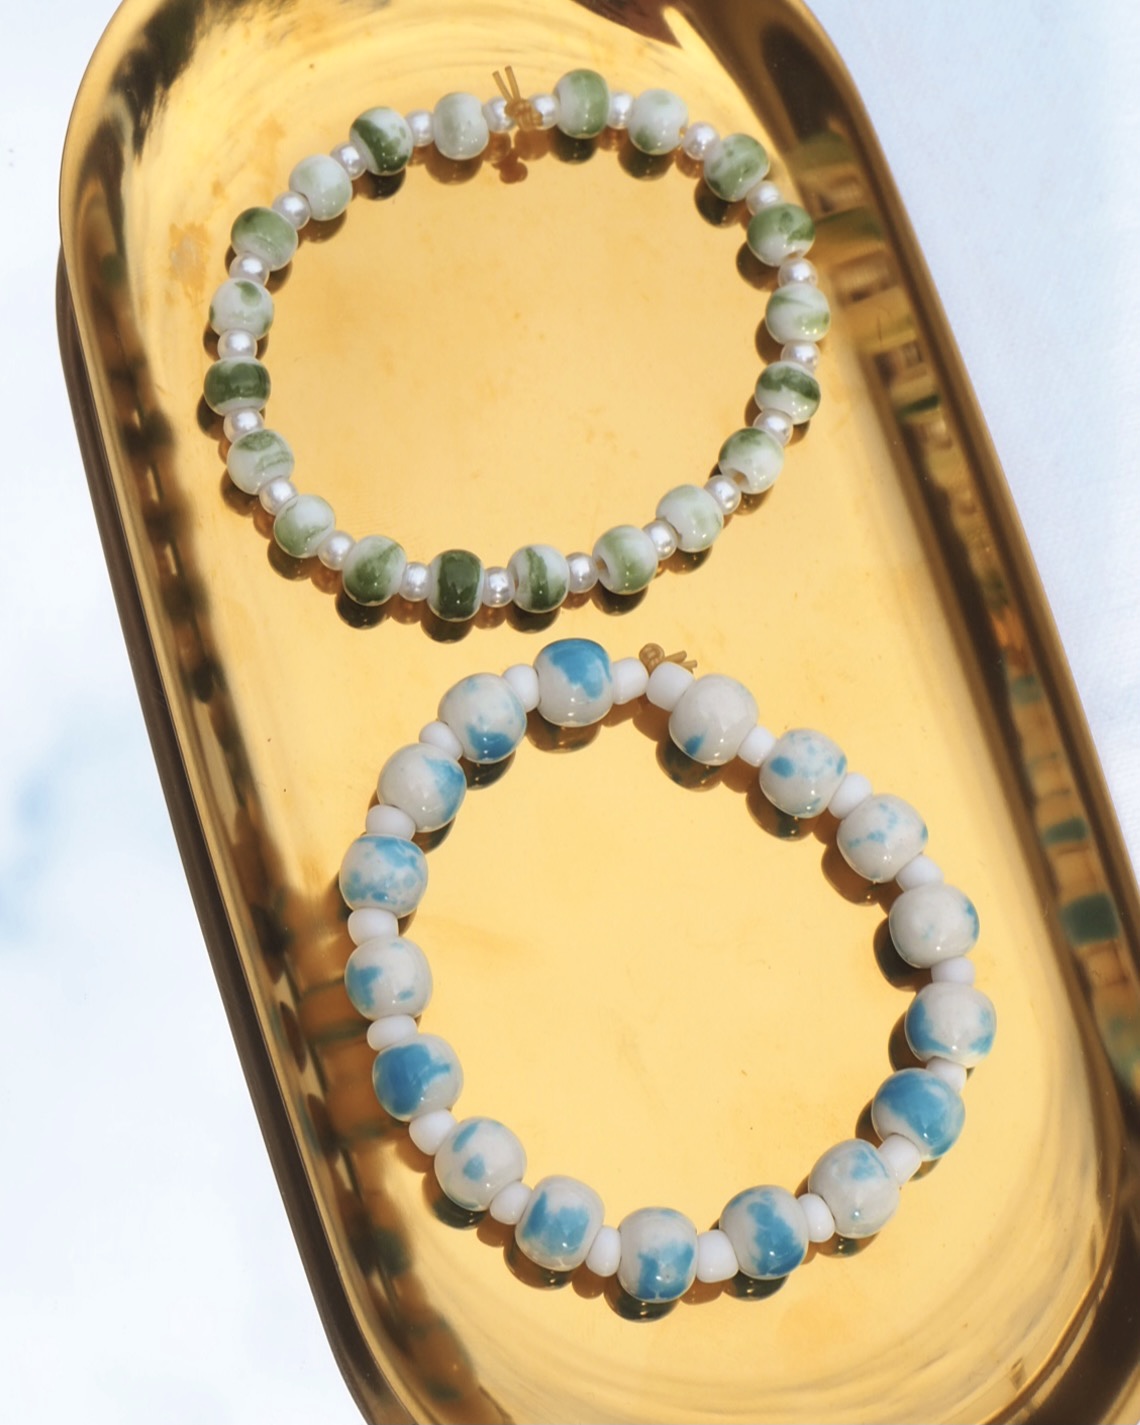 ceramic beads bracelet